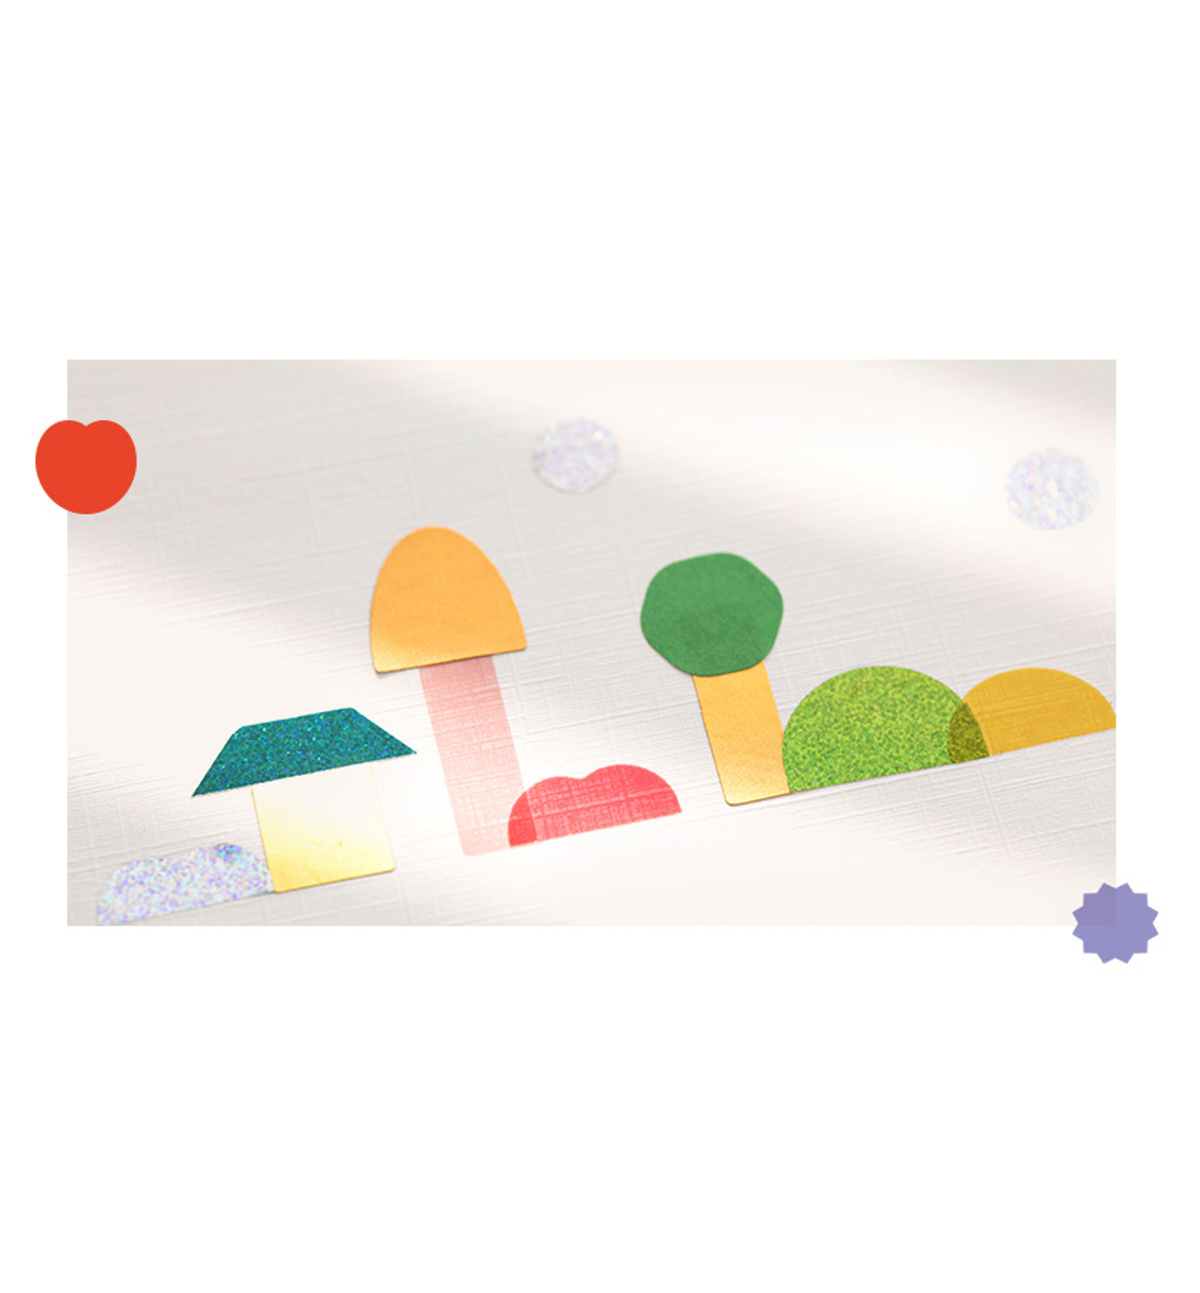 Color Palette Figure Sticker [Colorway]